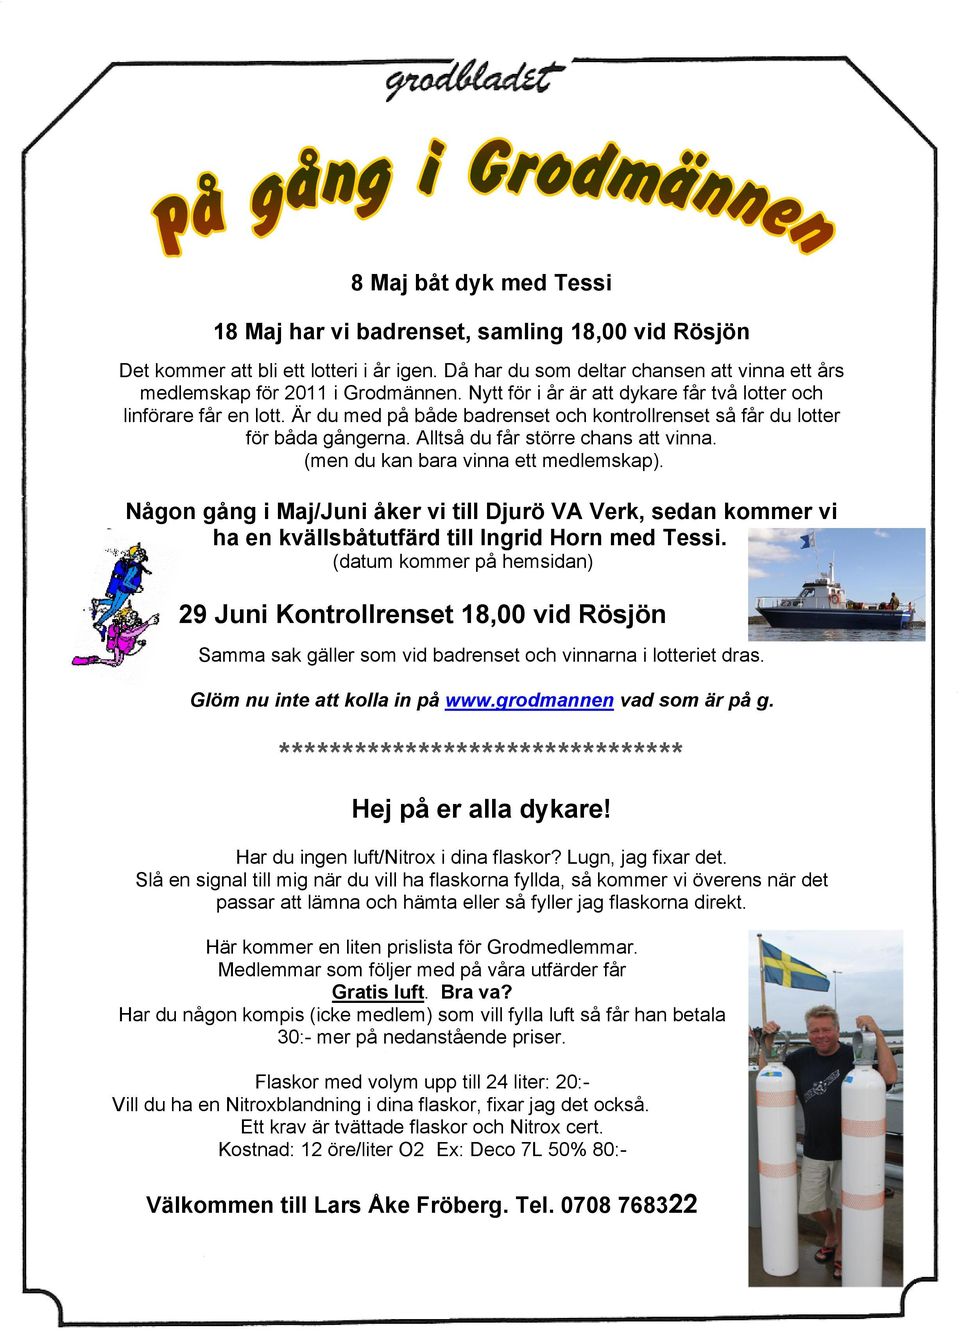 (men du kan bara vinna ett medlemskap). Någon gång i Maj/Juni åker vi till Djurö VA Verk, sedan kommer vi ha en kvällsbåtutfärd till Ingrid Horn med Tessi.